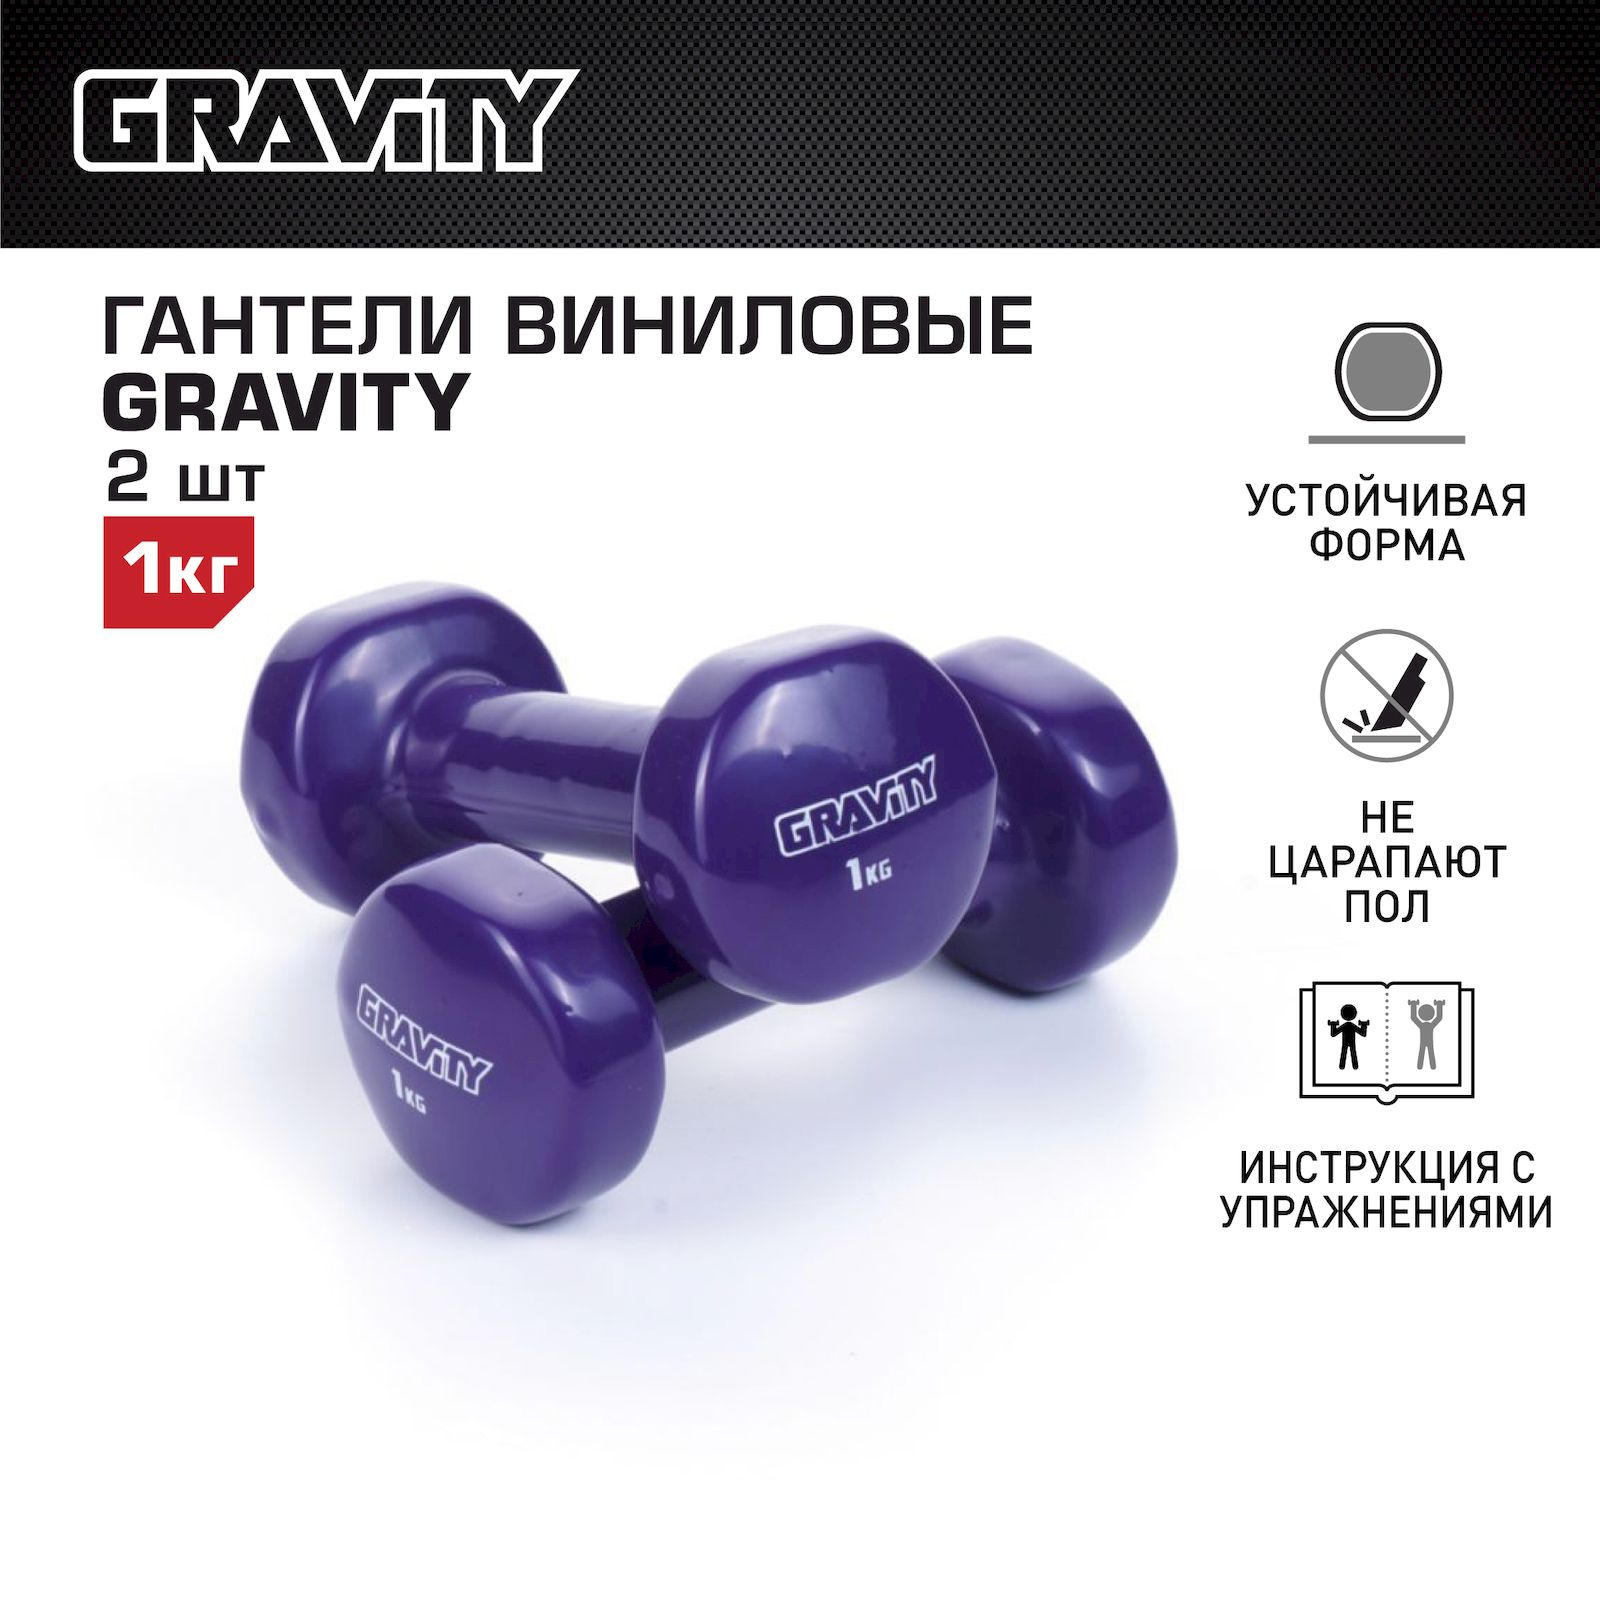 Неразборные гантели виниловые Gravity SL1309 2 x 1 кг, фиолетовый